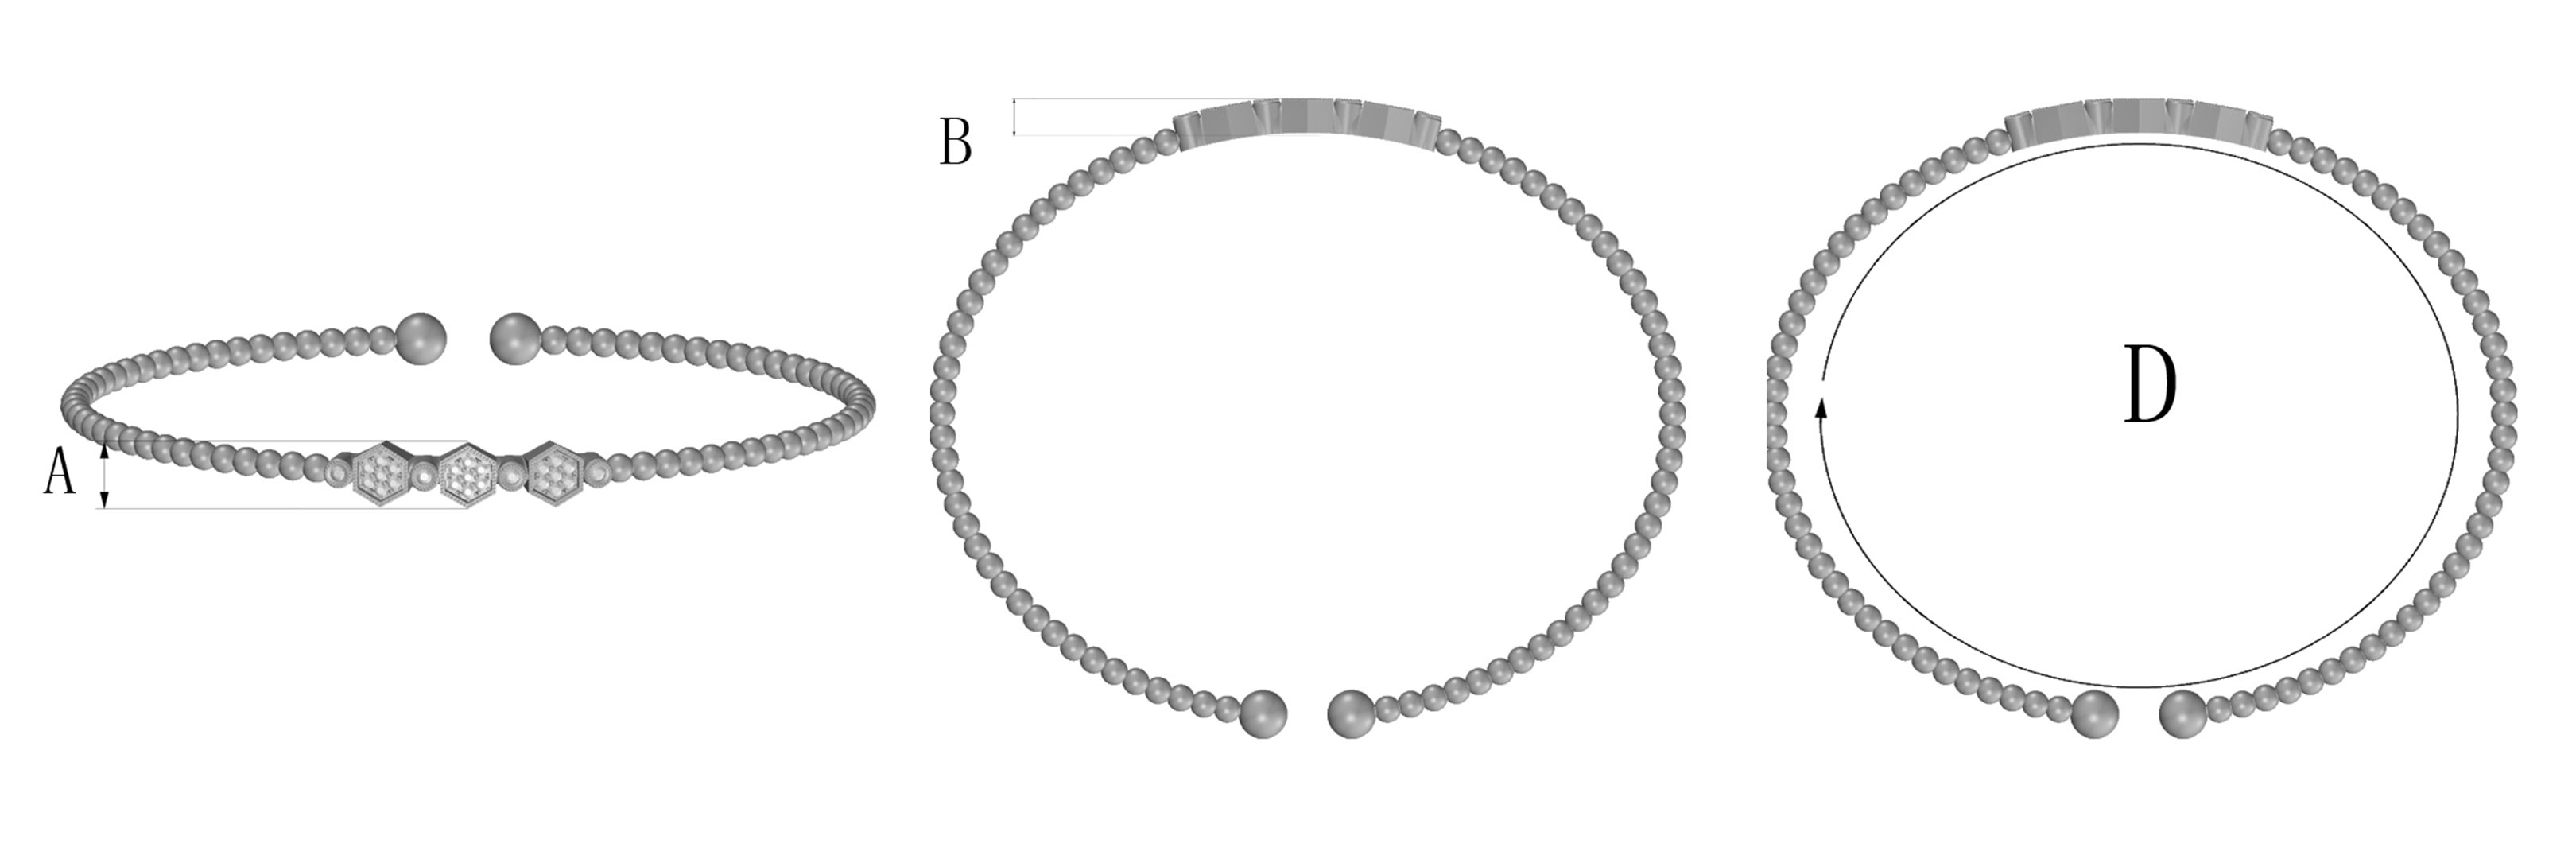 Bracelet Diagram